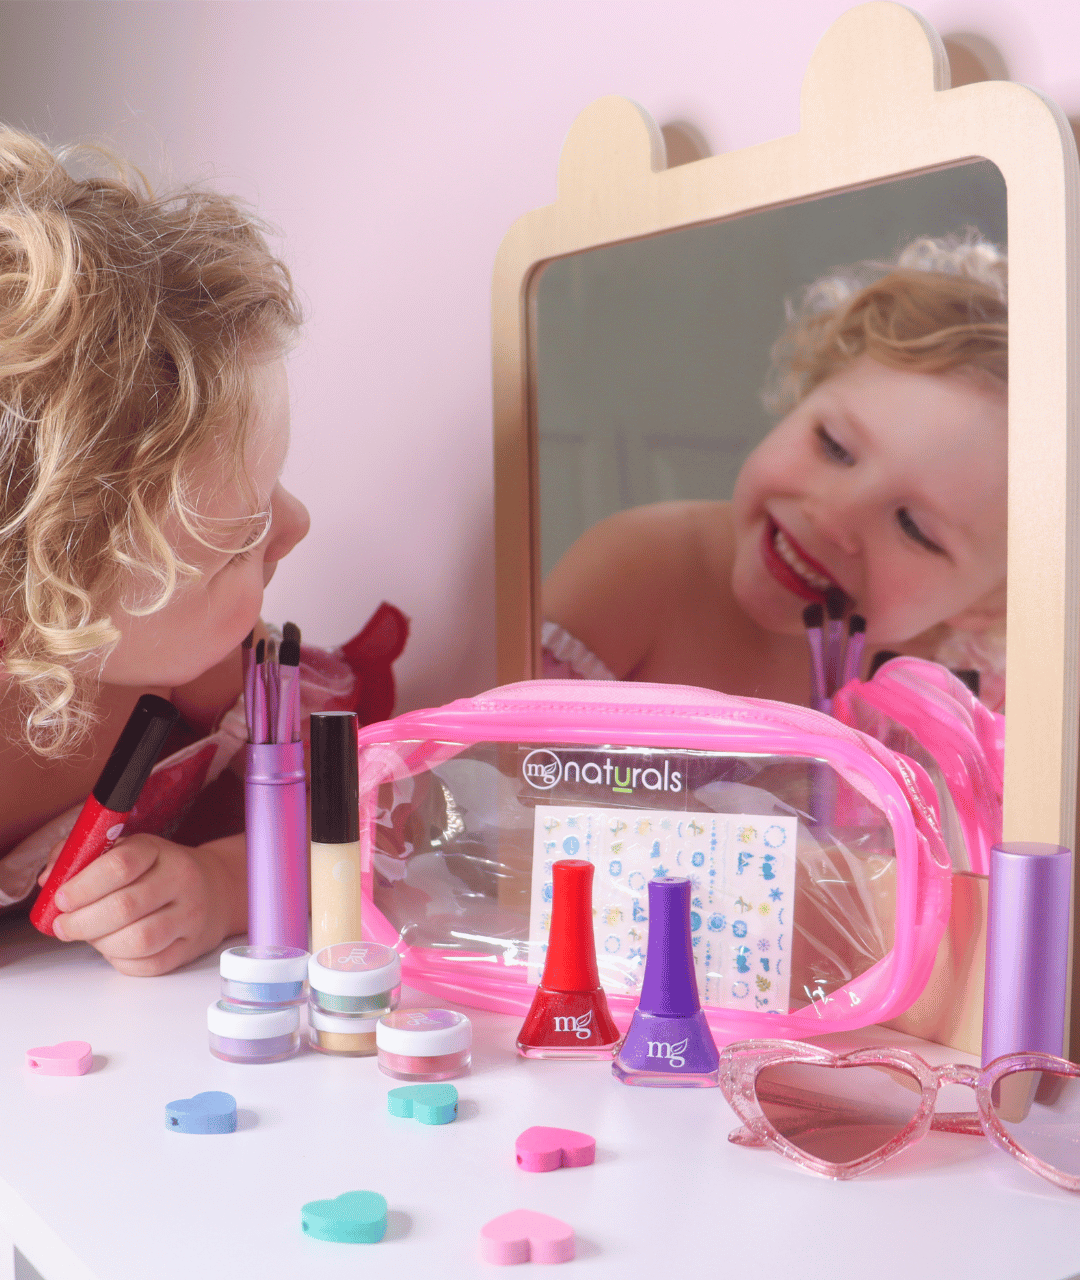 Kids Titanium Dioxide Free Non Toxic Makeup Kit